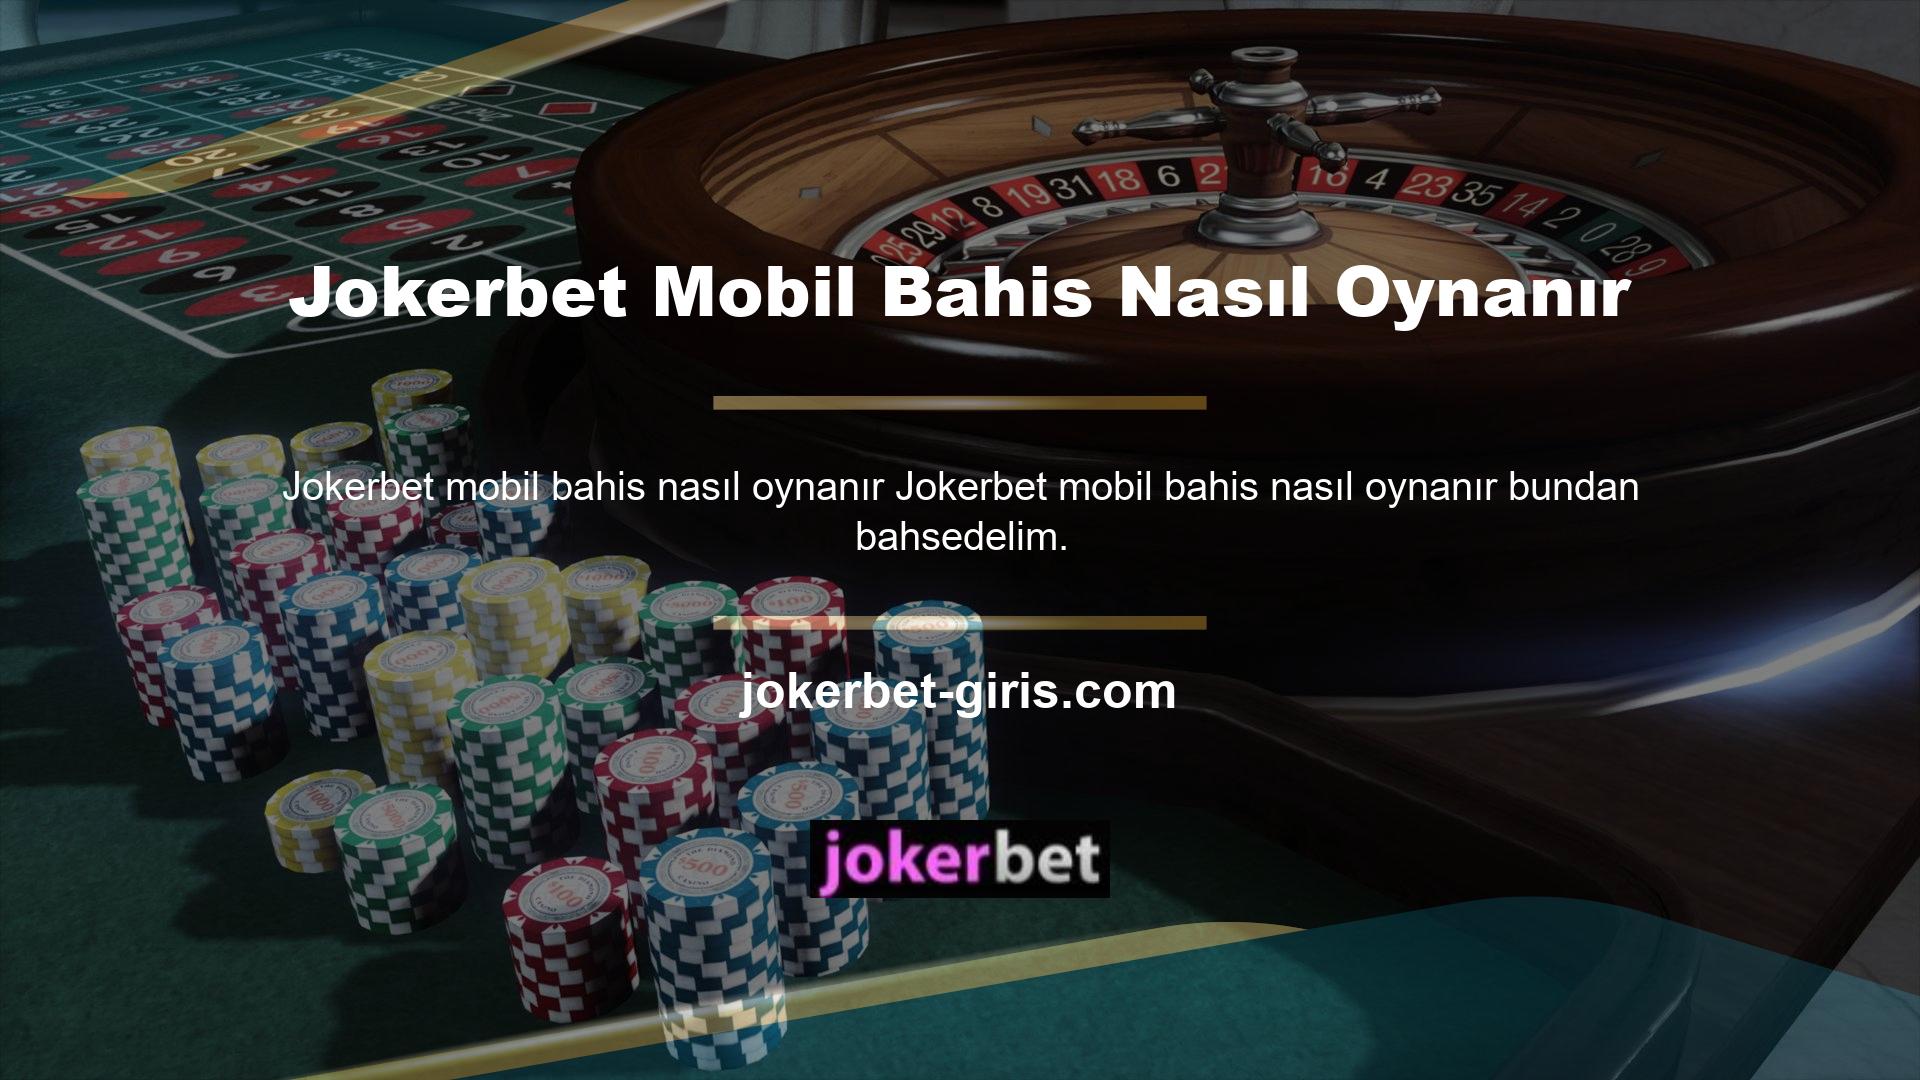 Kupon oluşturmak ve Jokerbet casino oyunlarına erişmek artık mobil kayıt sürecimizi takip ederek daha kolay